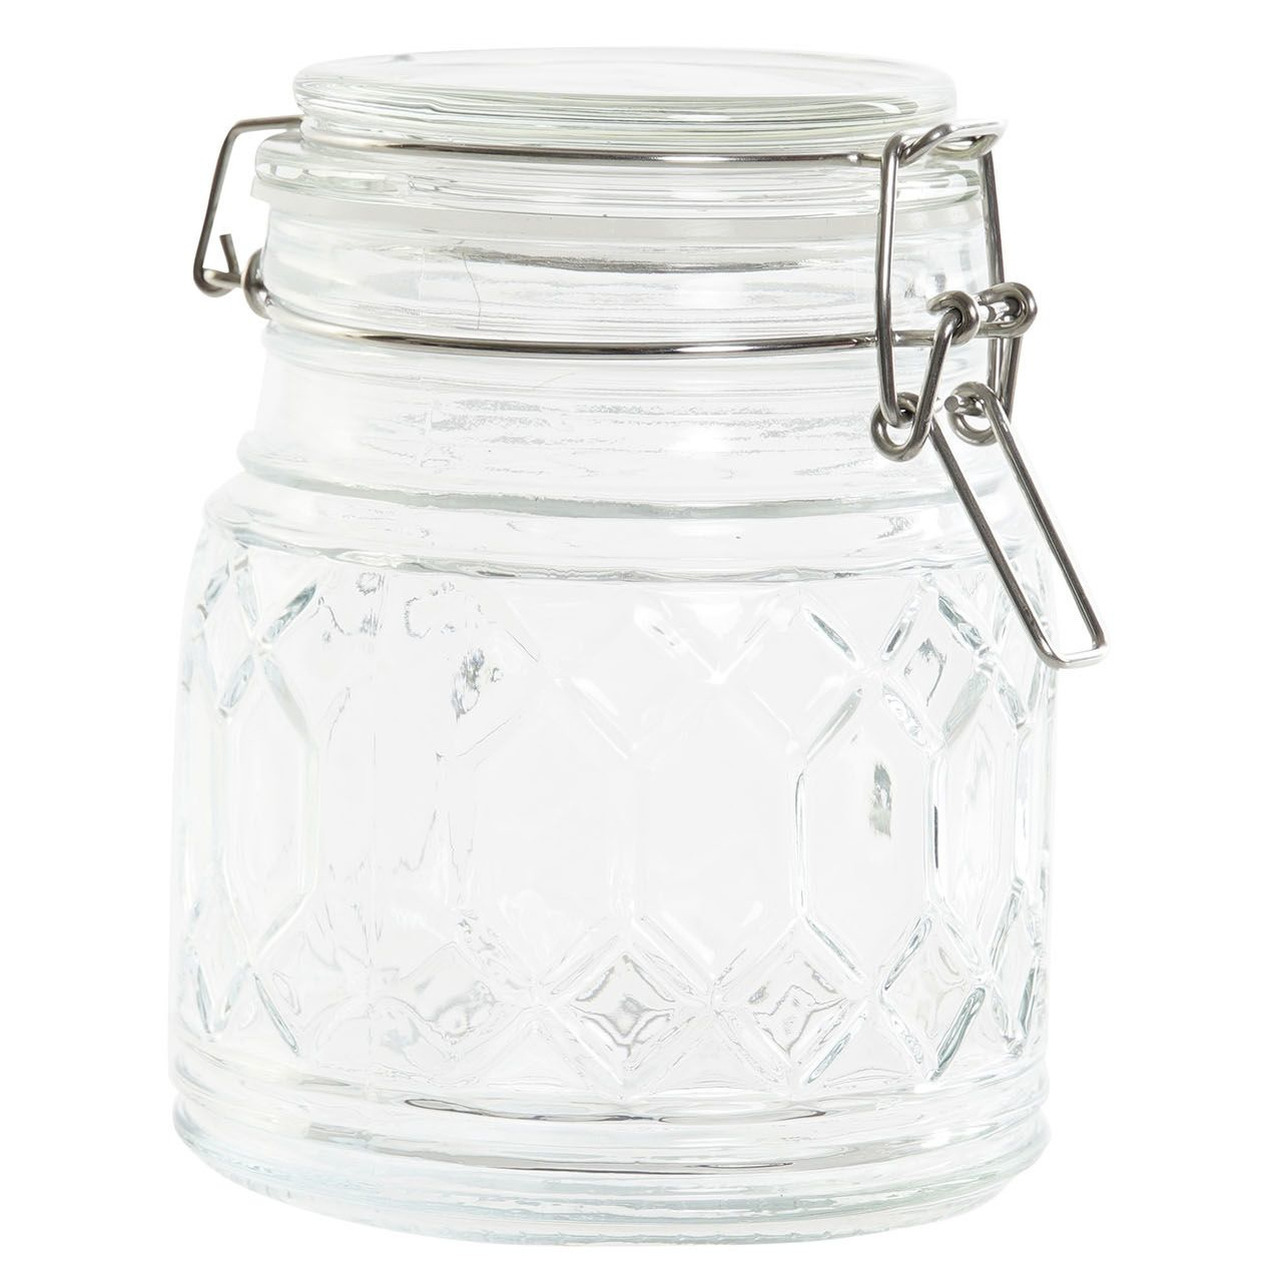 Items Voorraadpot/weckpot 510 ml glas met metalen beugelsluiting -